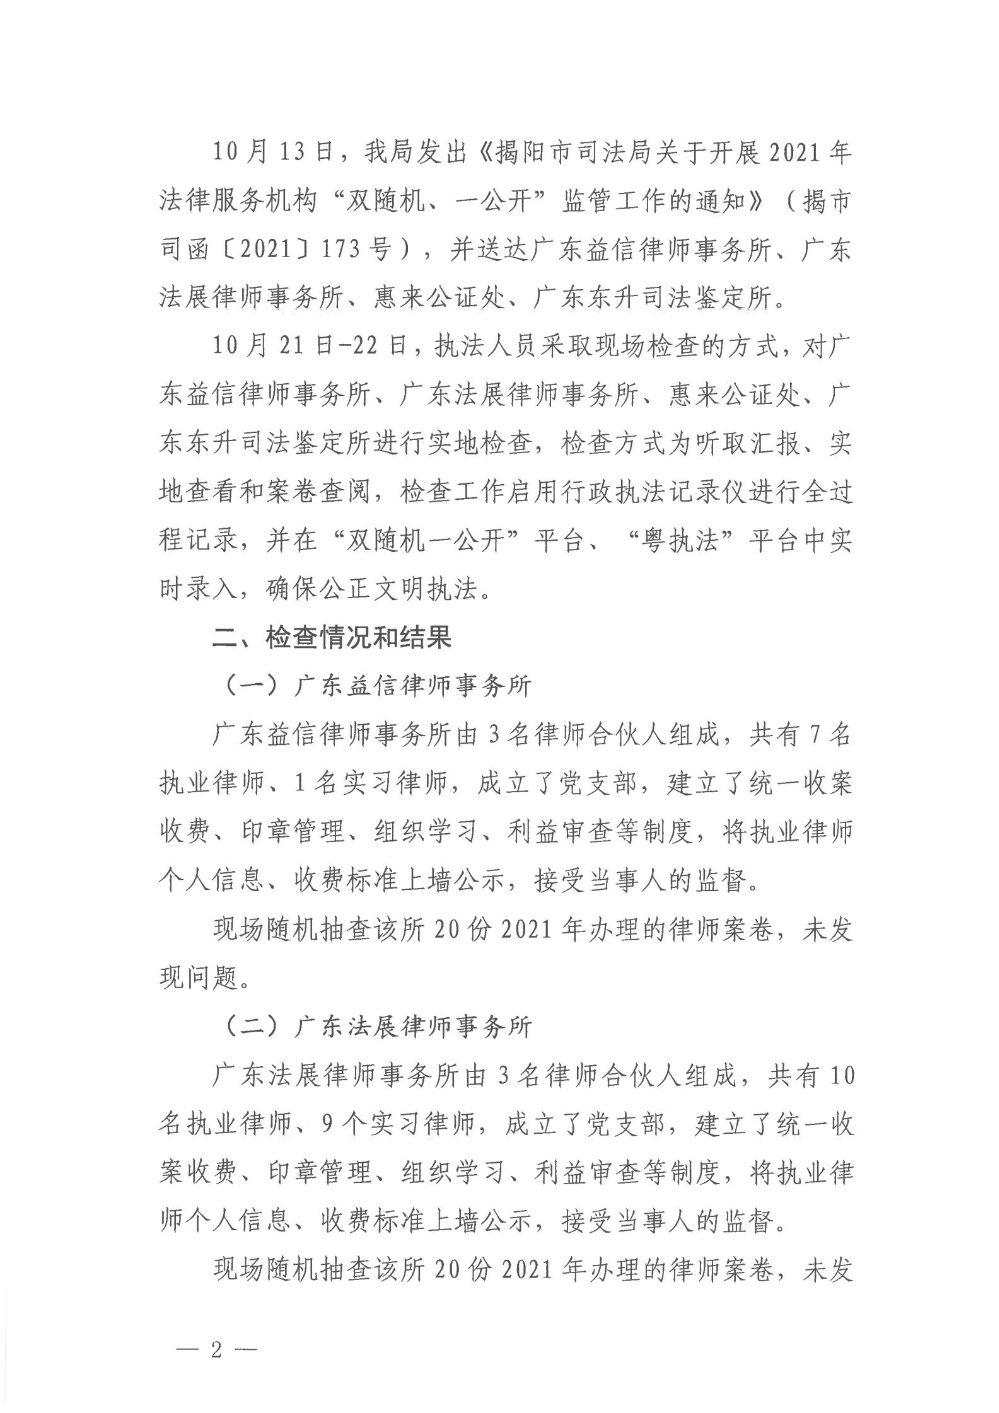 揭阳市司法局2021年法律服务机构“双随机、一公开”监管工作的情况报告_01.jpg